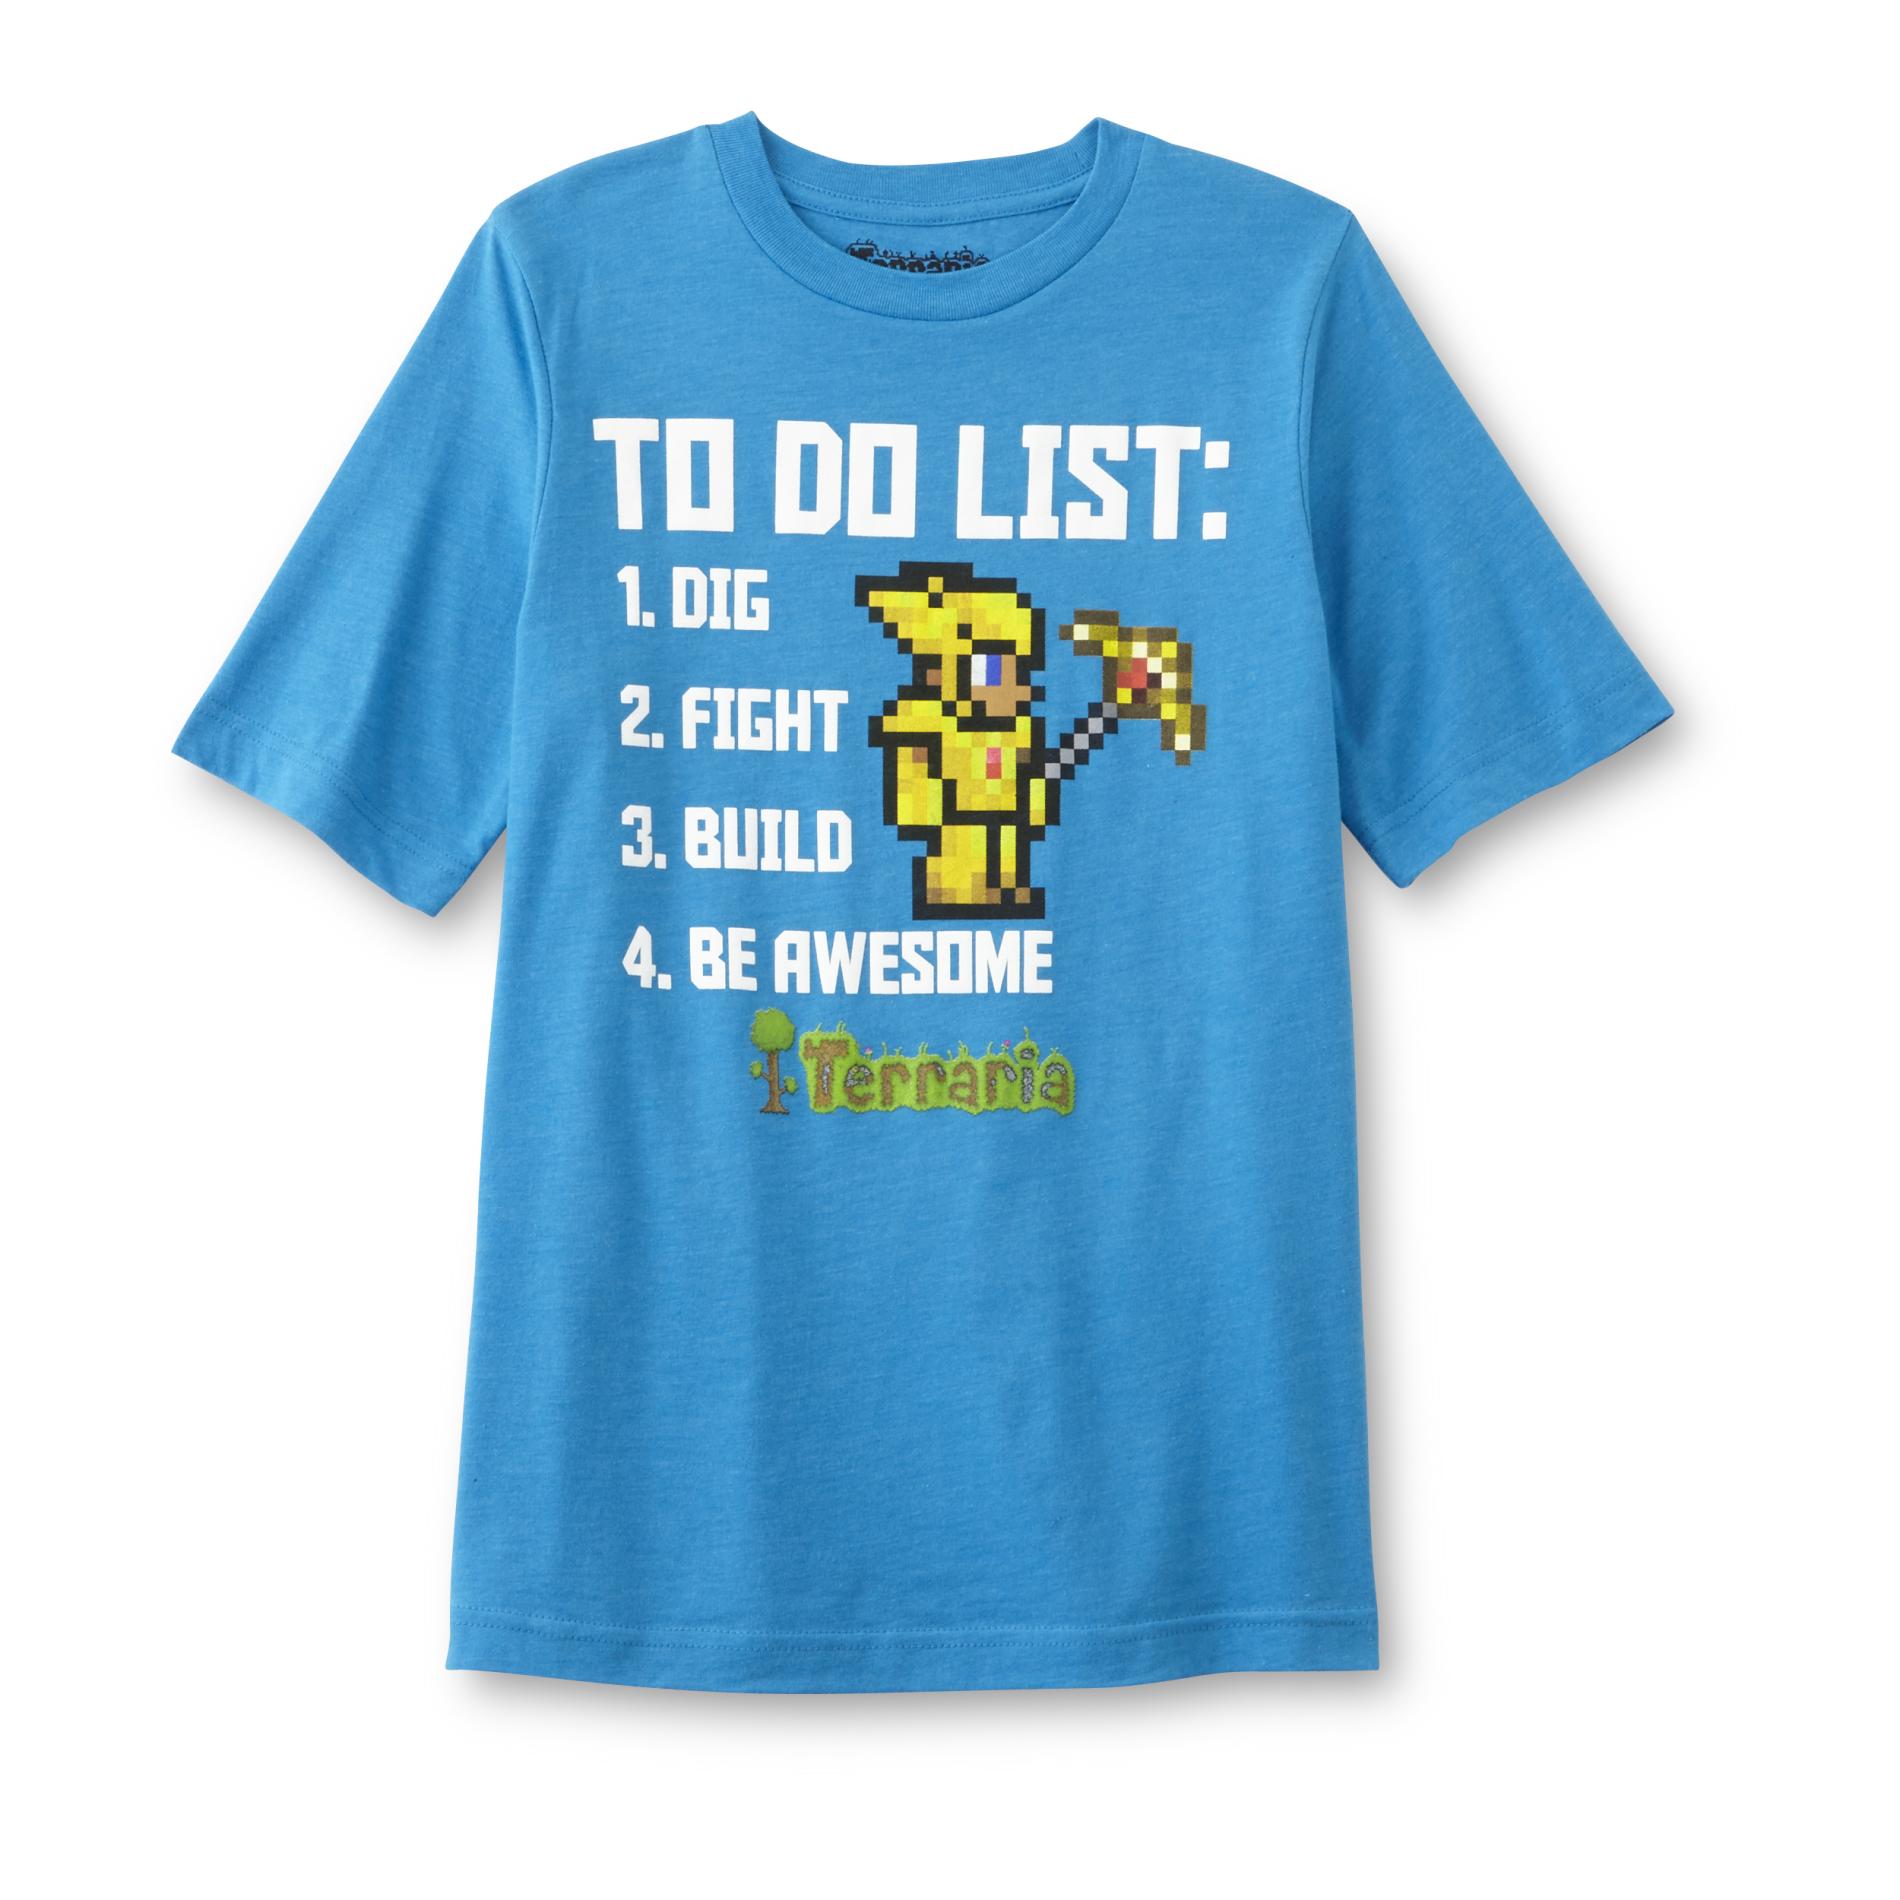 Terraria Boy's Graphic T-Shirt - List